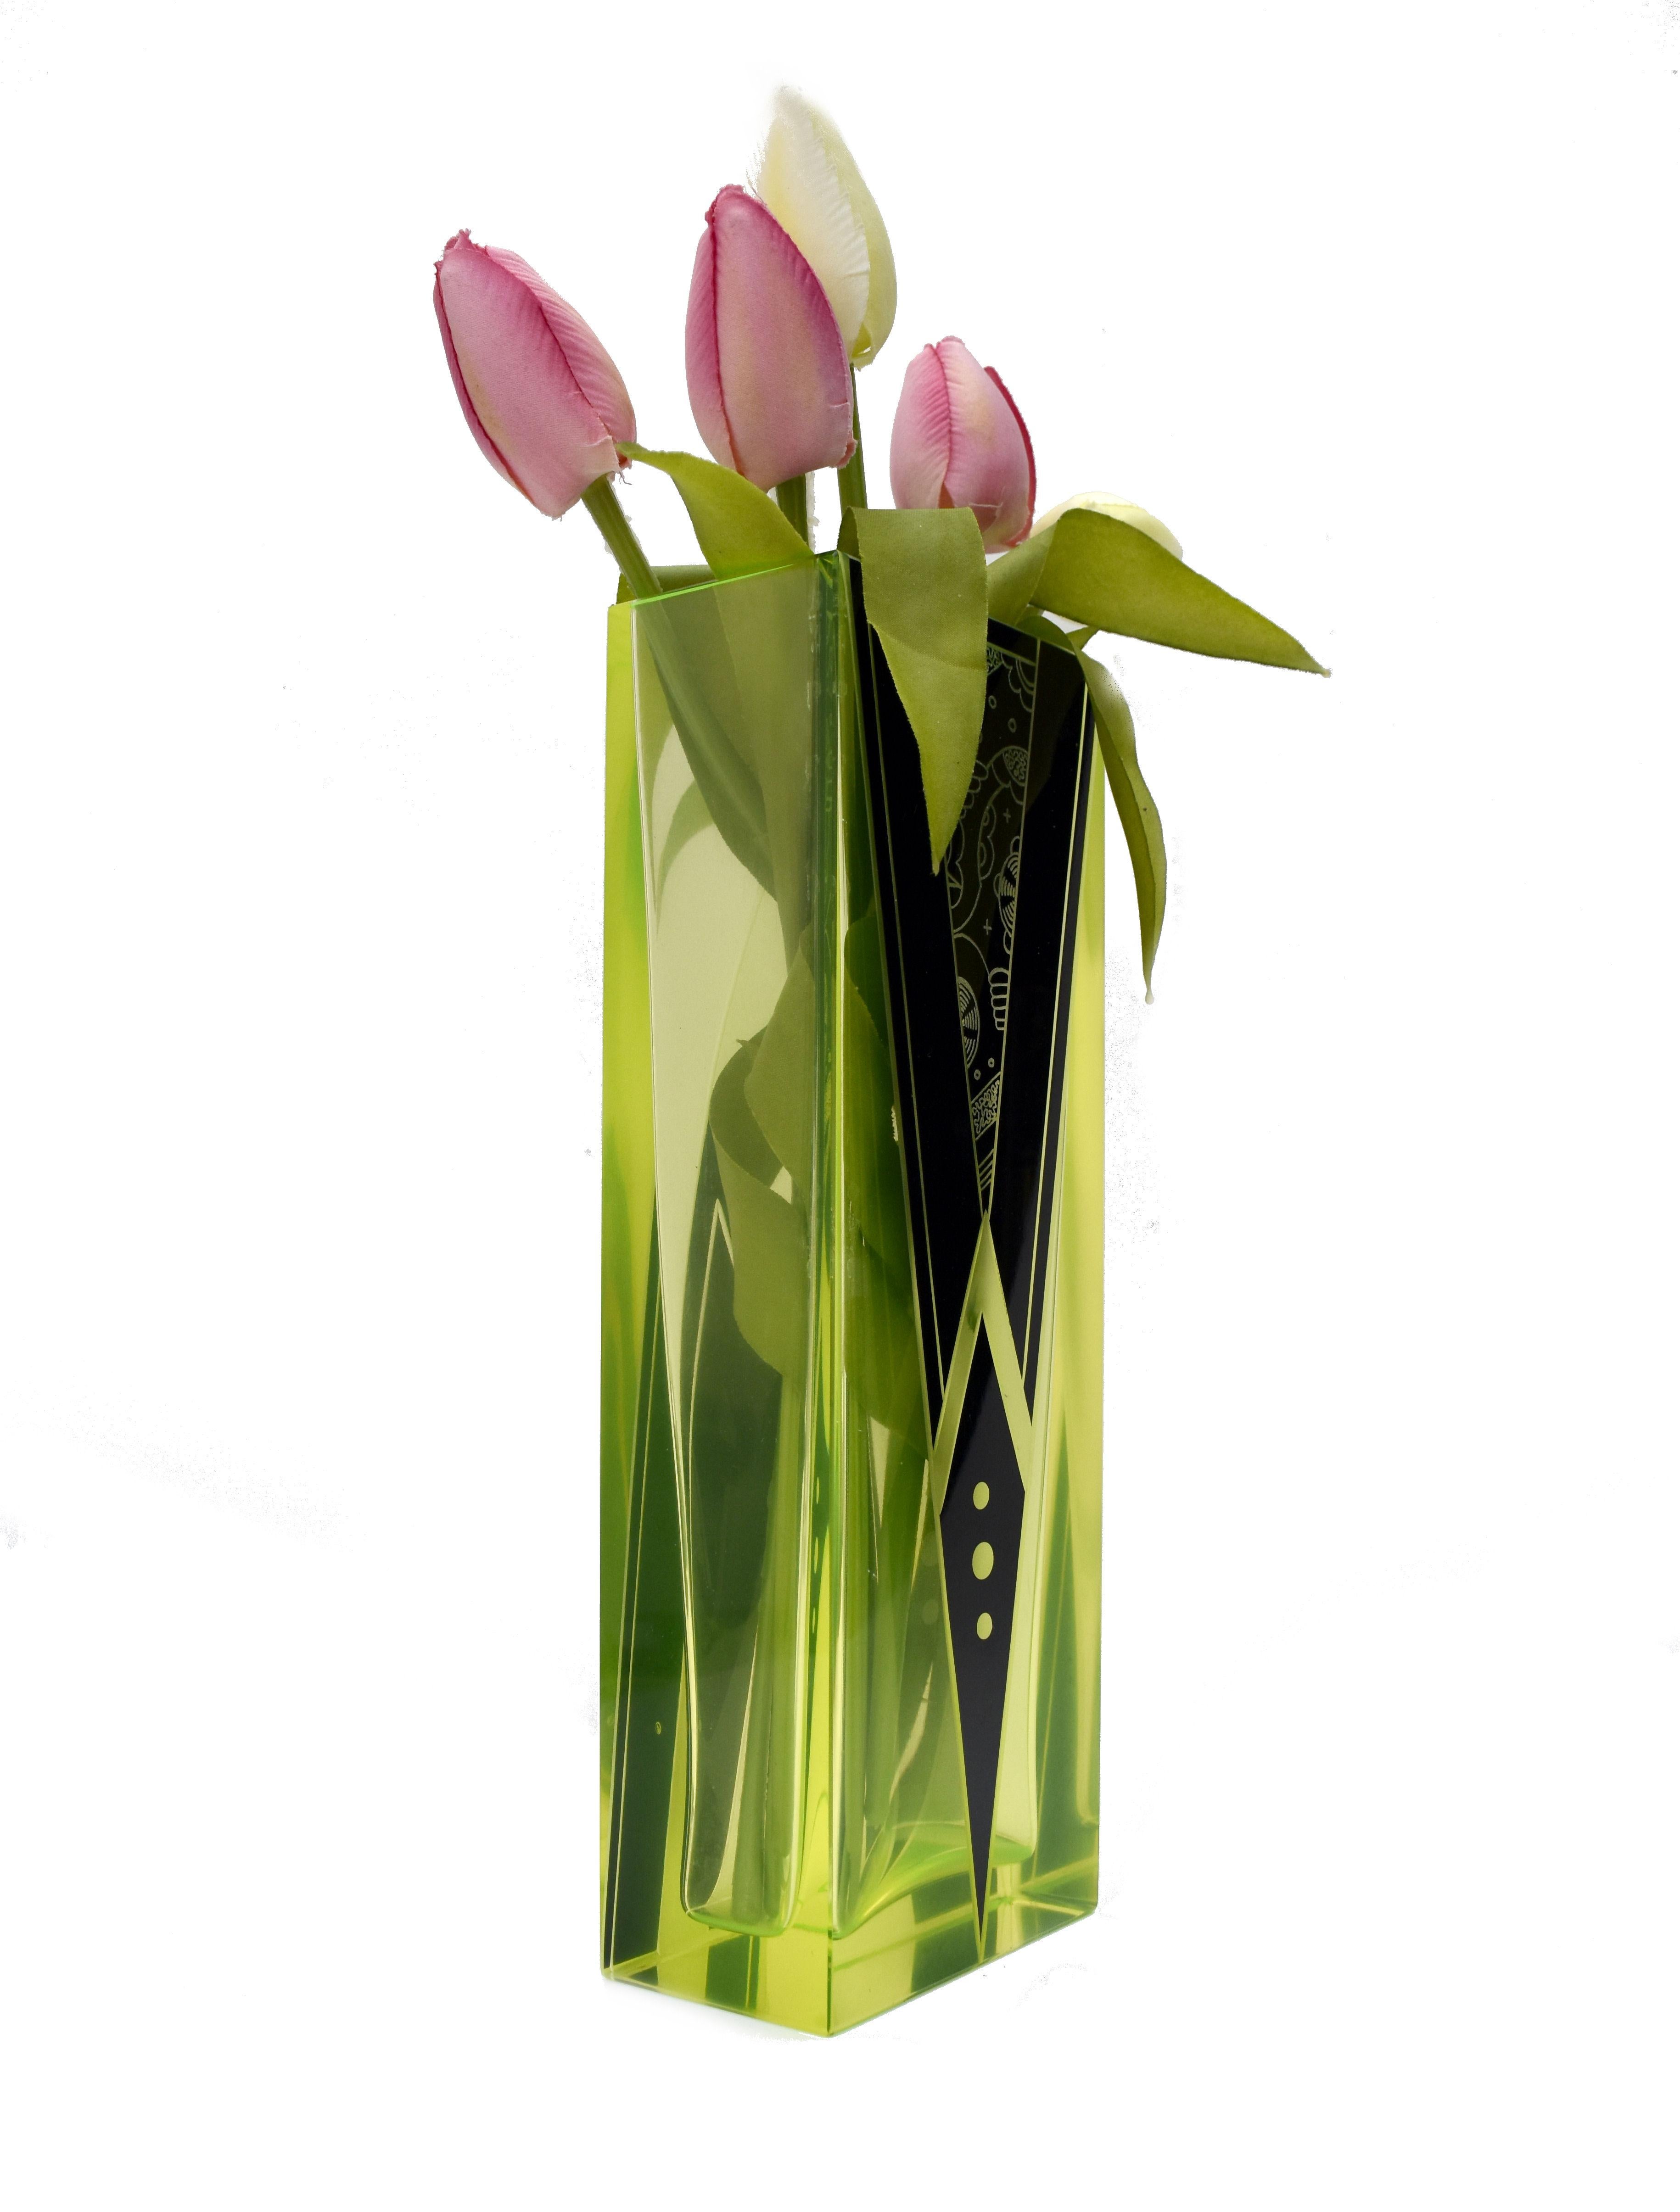 Diese aus der Tschechischen Republik stammende Art Deco Vase sieht nicht nur optisch atemberaubend aus mit ihrer sehr charakteristischen grün/gelben Färbung mit tiefschwarzen Emaille-Akzenten, sondern hat auch eine großartige Größe von knapp über 23